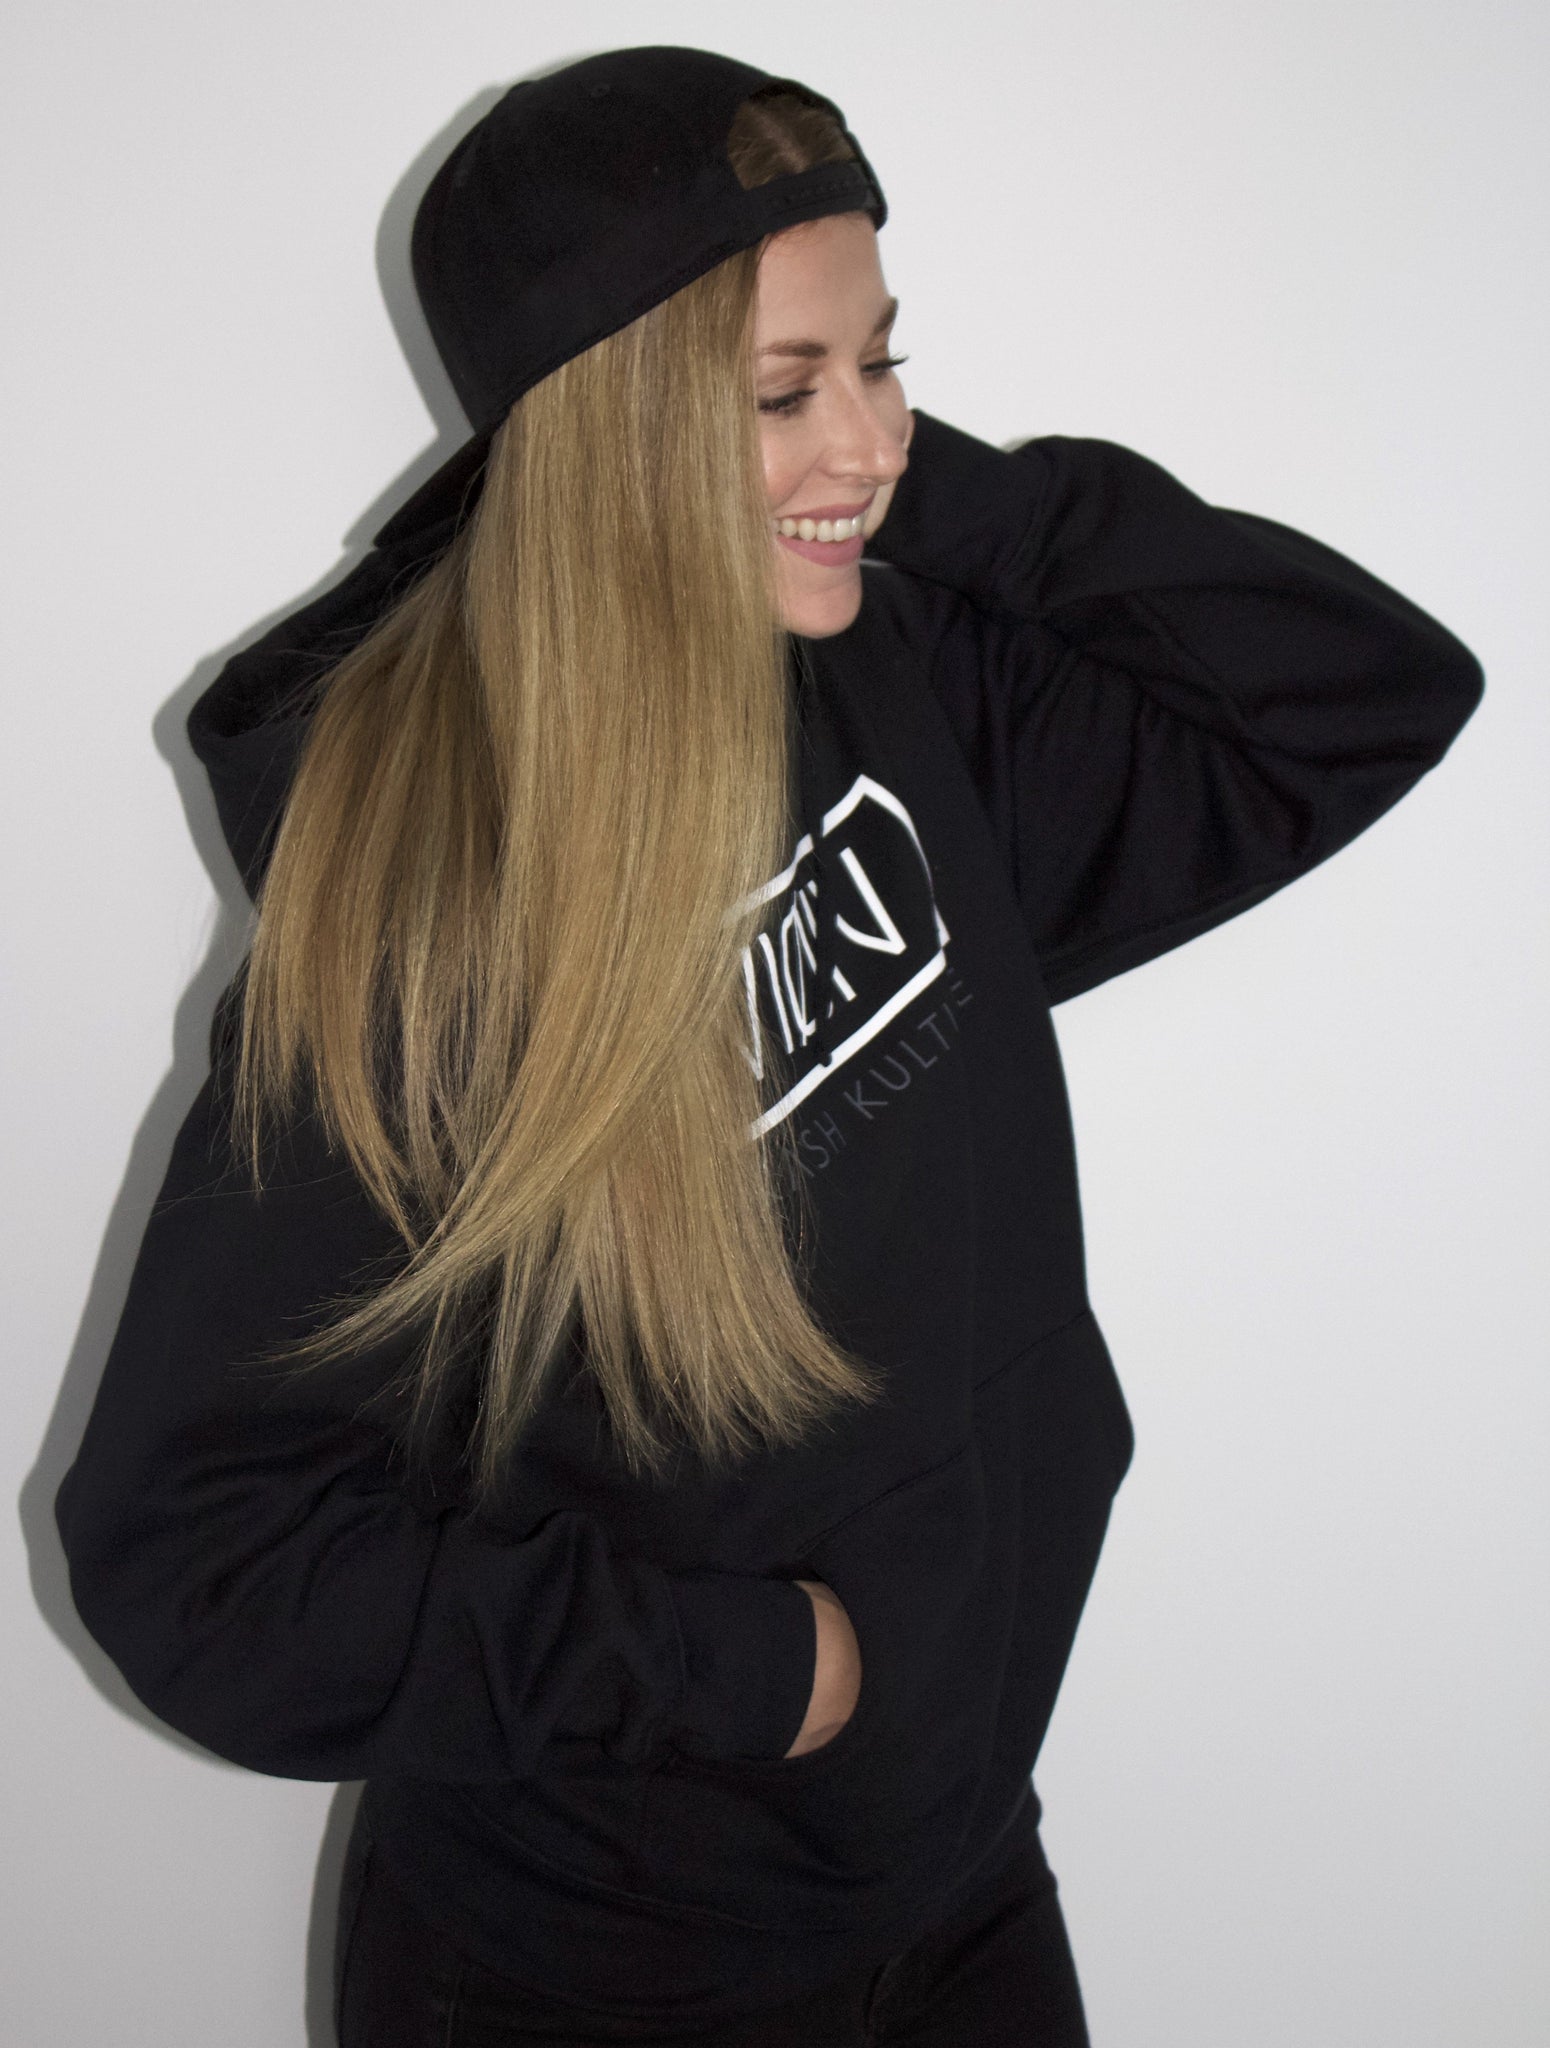 604 premium hoodie - black